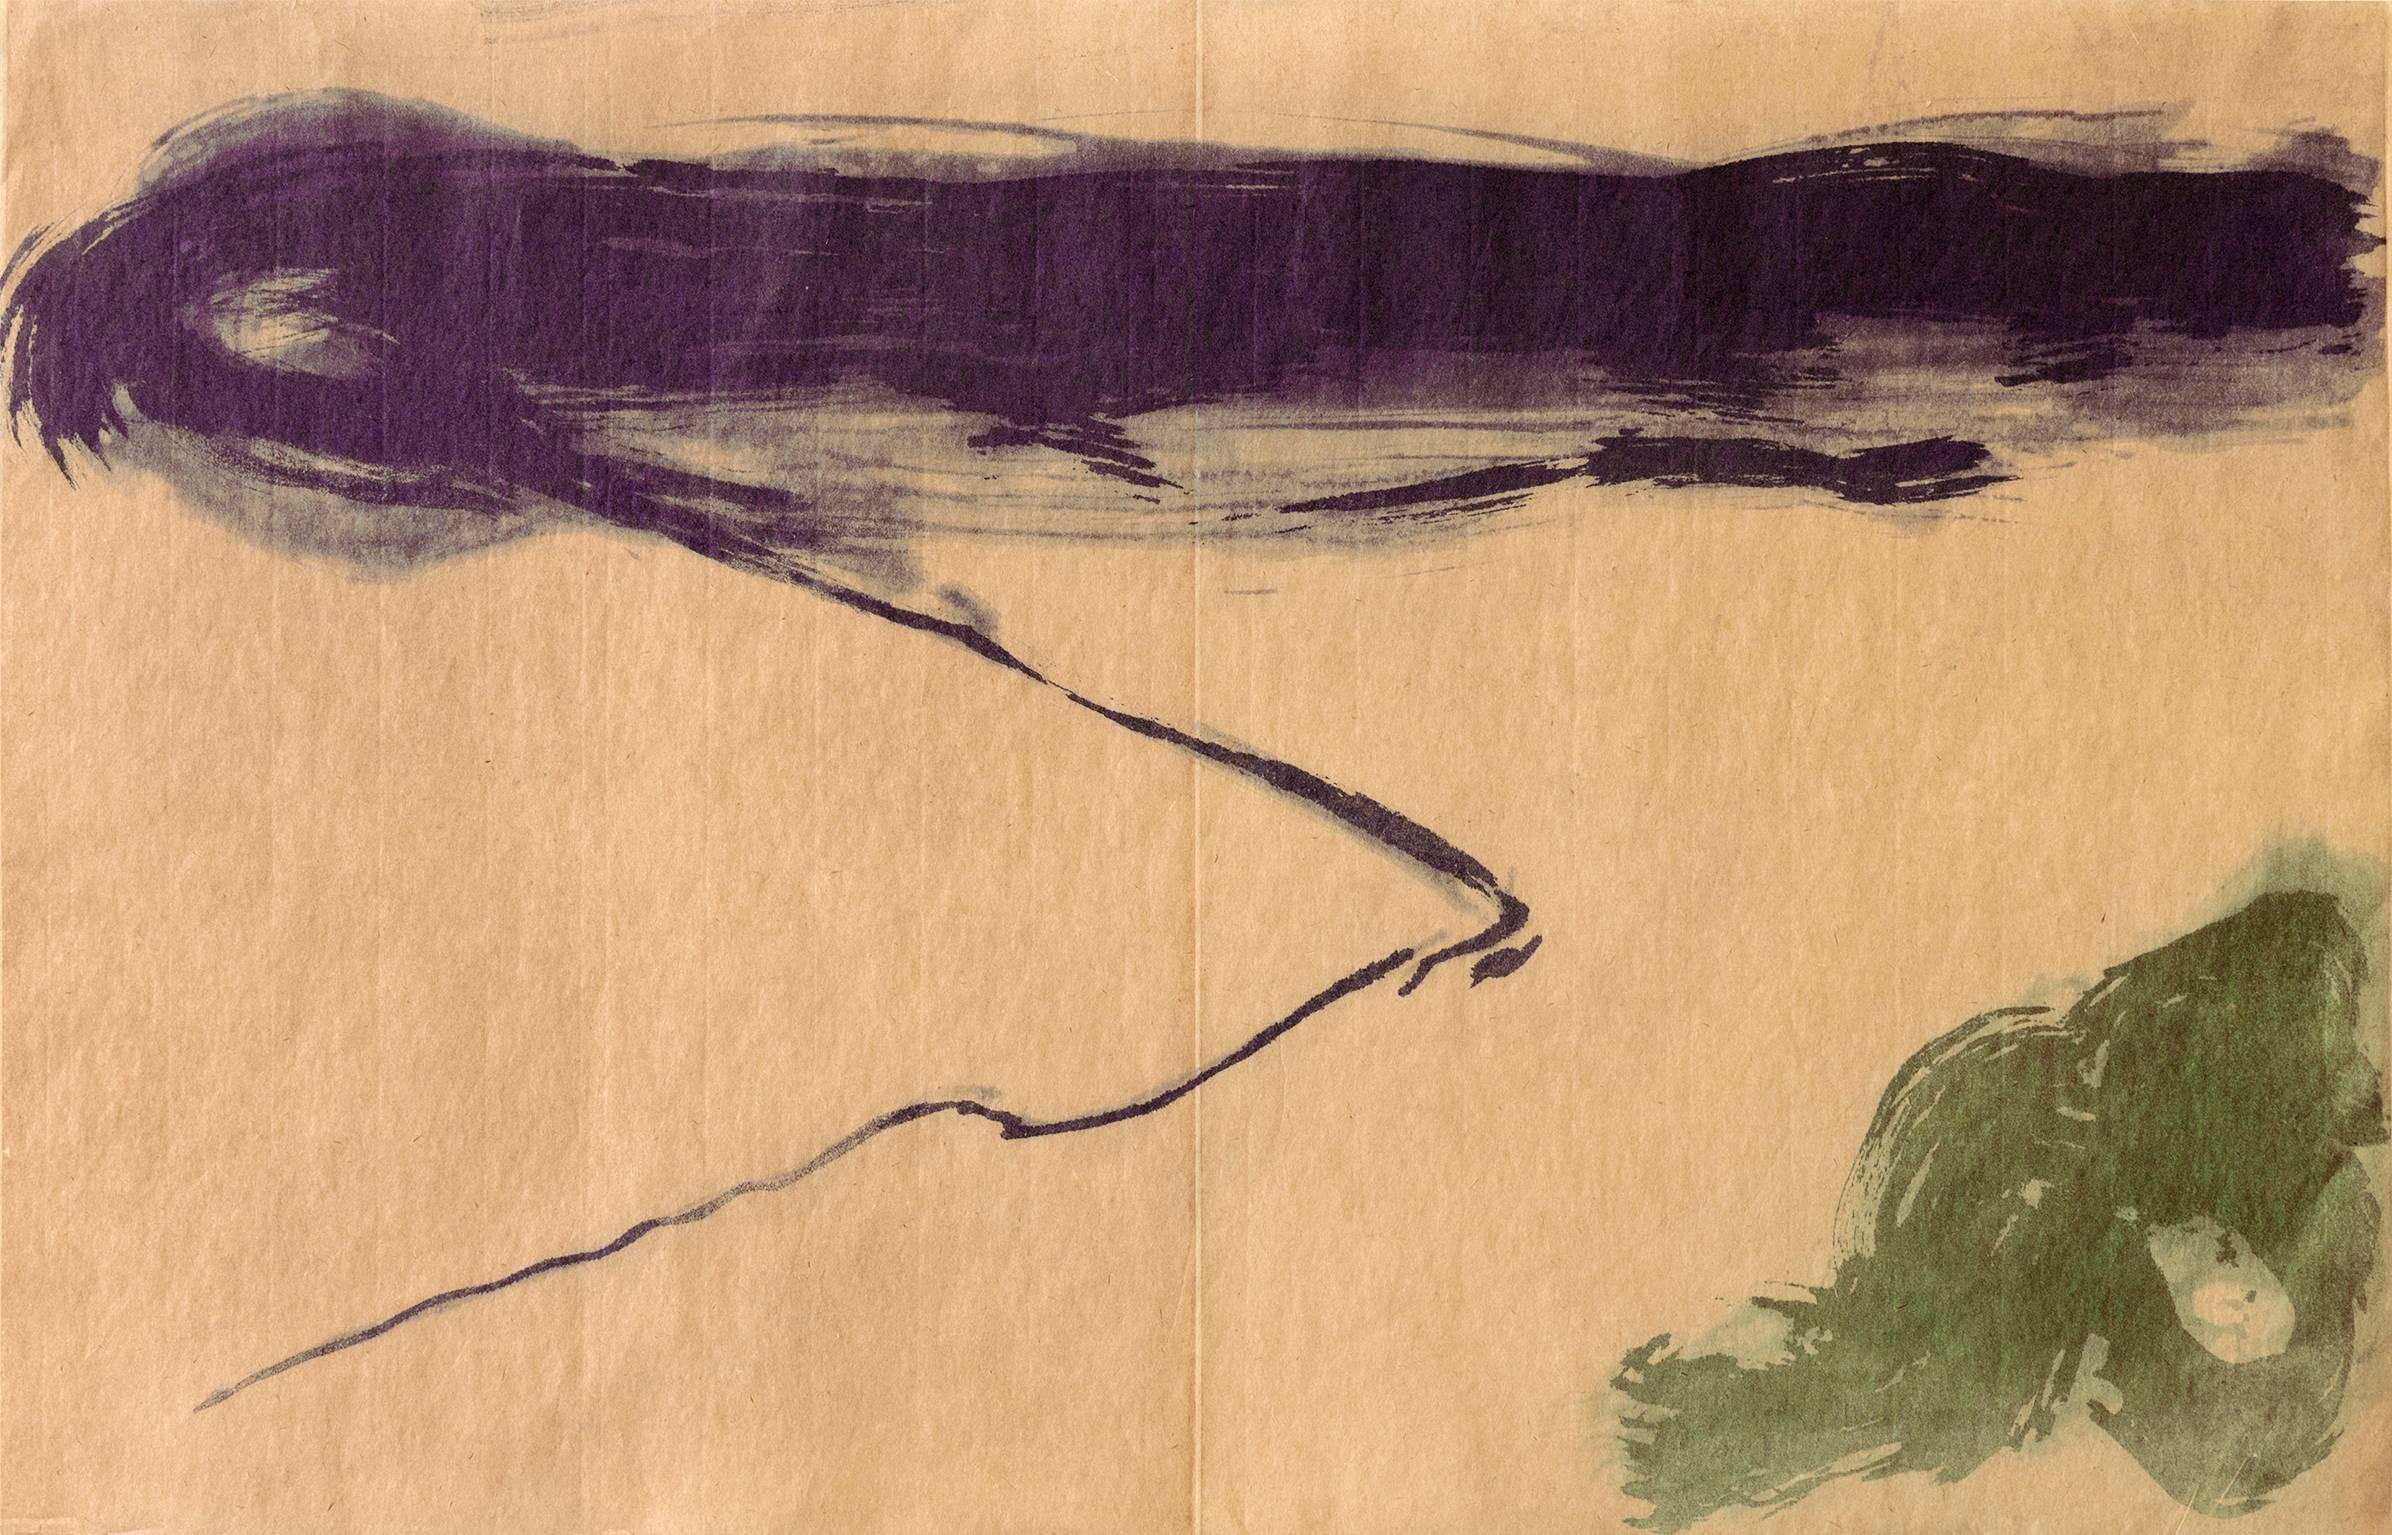 Kumi Korf Abstract Print - “View Early Morning”, abstract landscape aquatint print, violet, sap green.